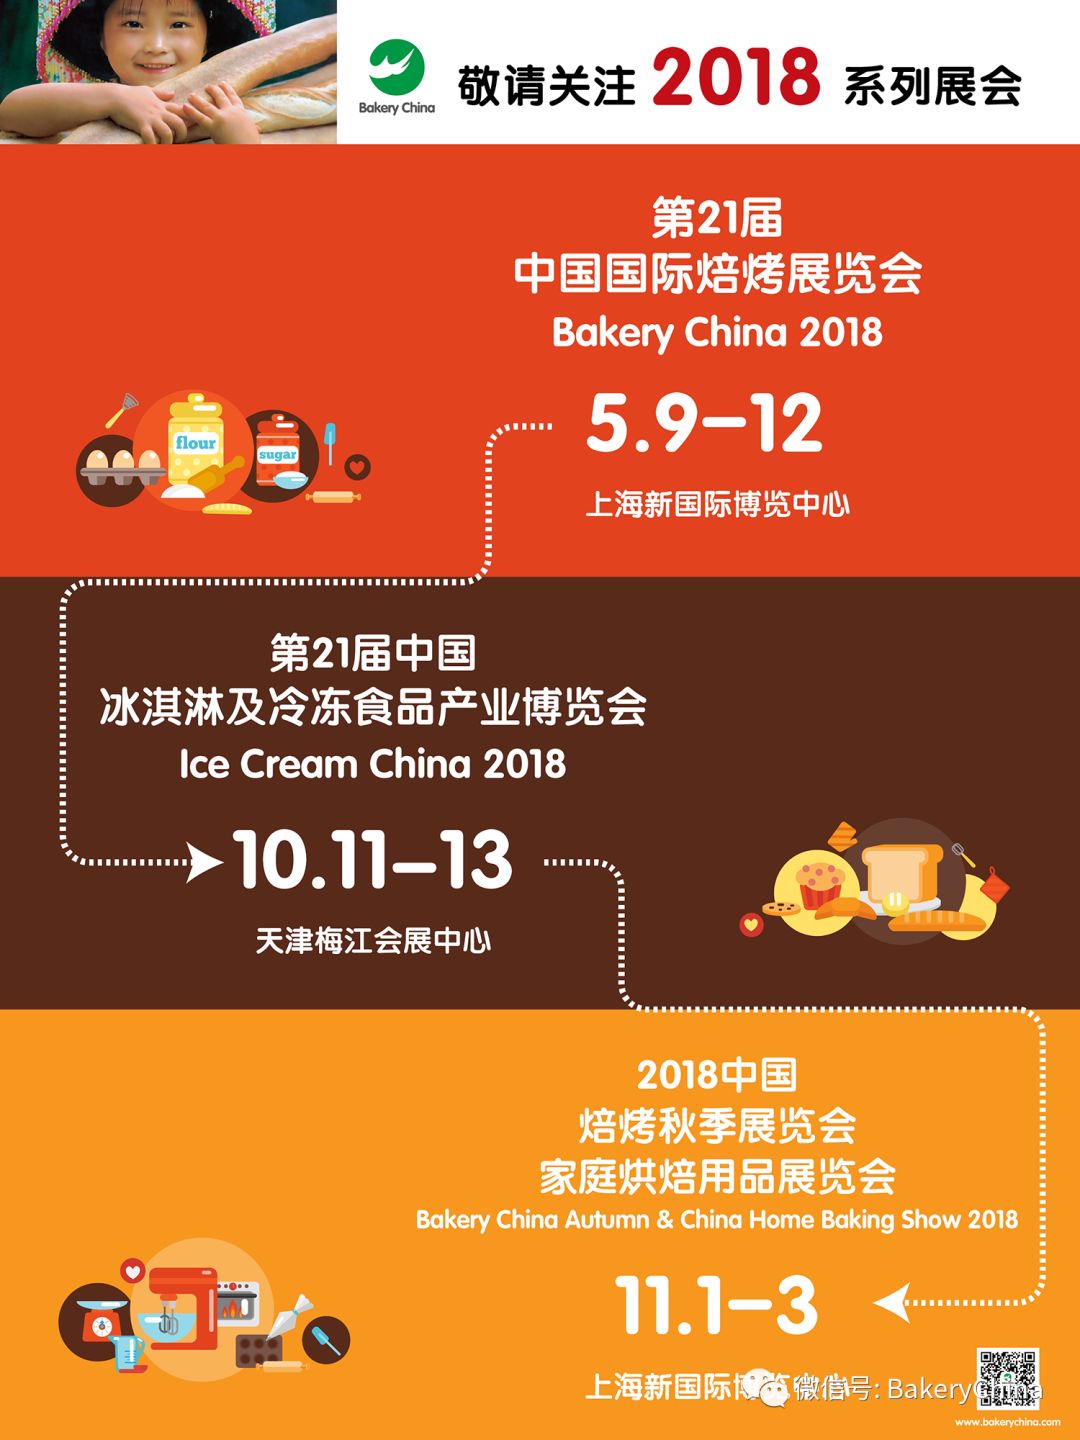 烘焙,焙烤,上海焙烤展,中国国际焙烤展览会BakeryChina,食品展会大全